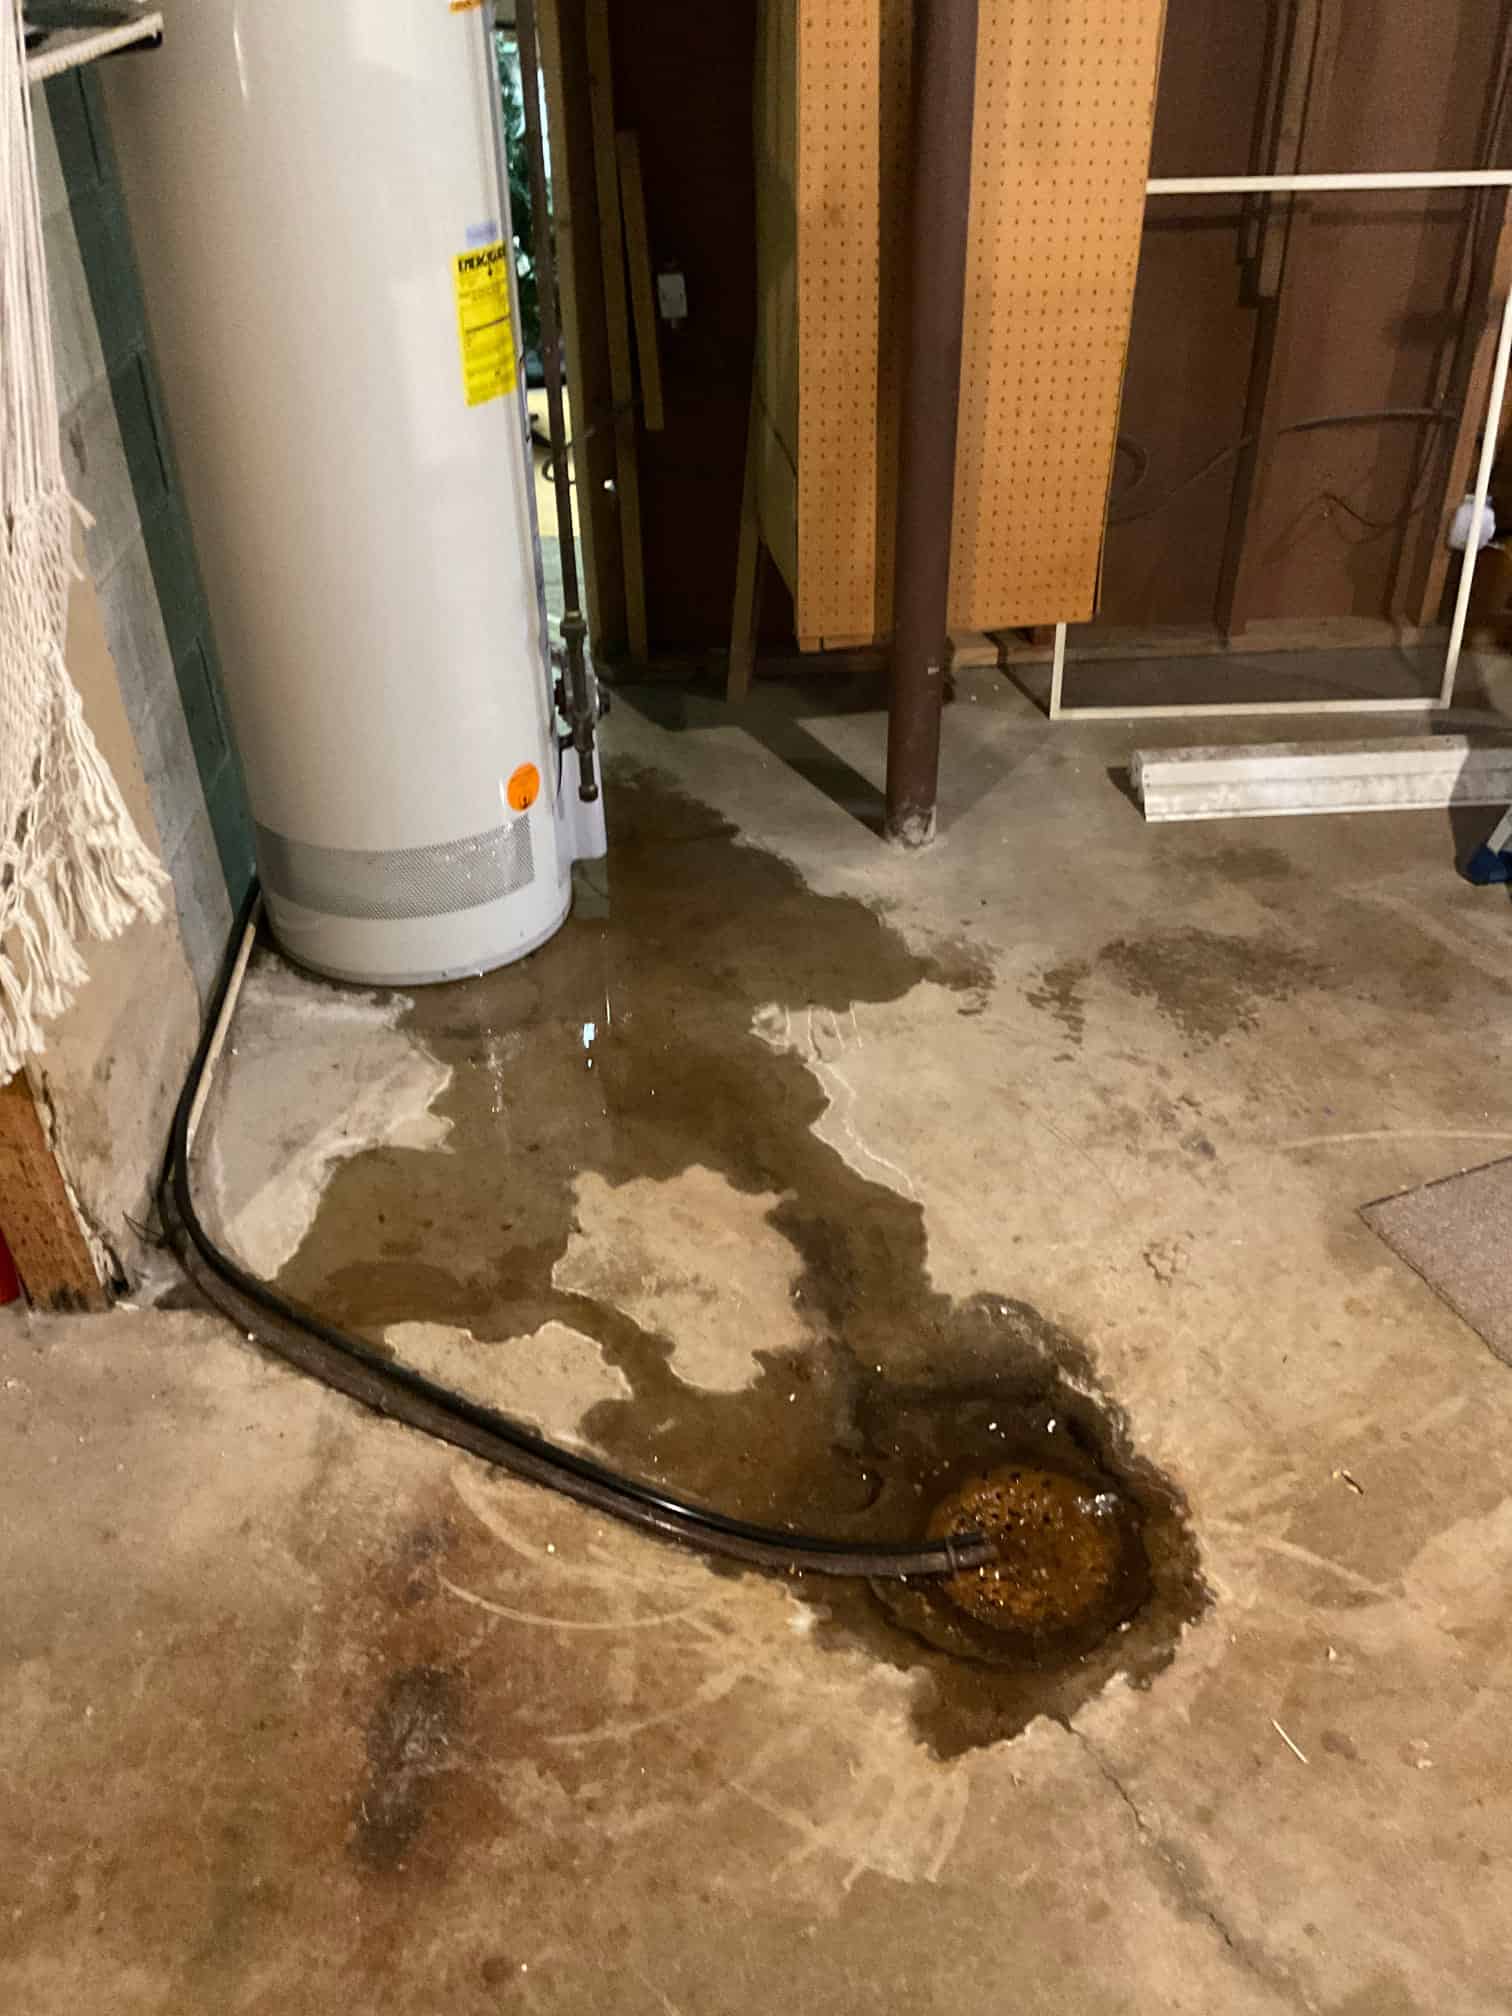 Water Heater Leaking and Needing Repairs